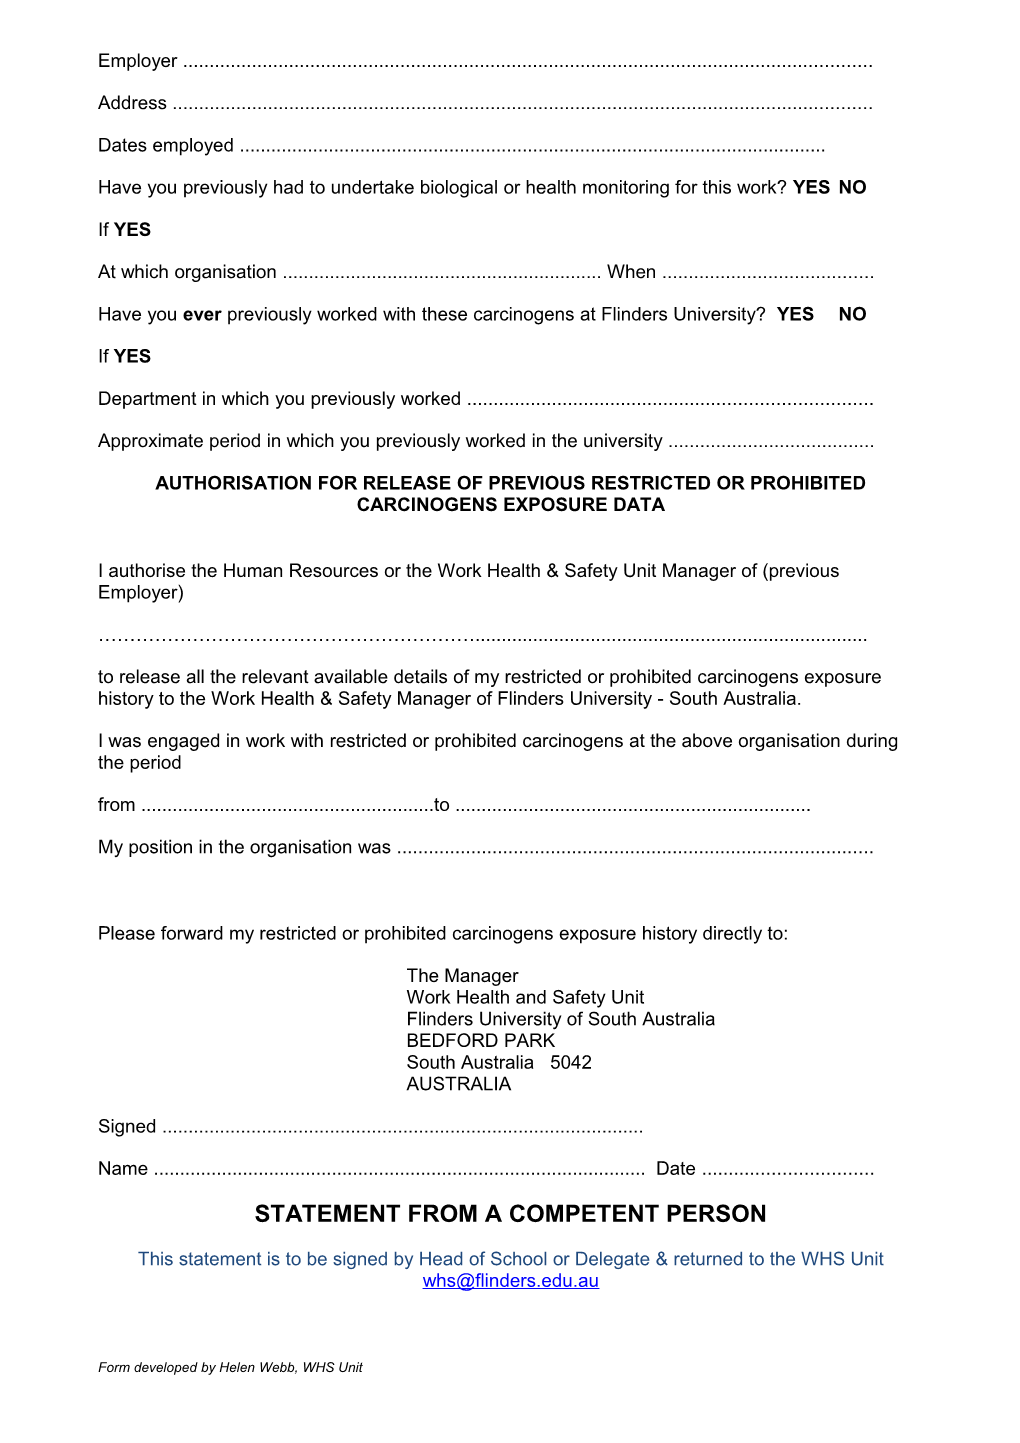 Worker Registration Form